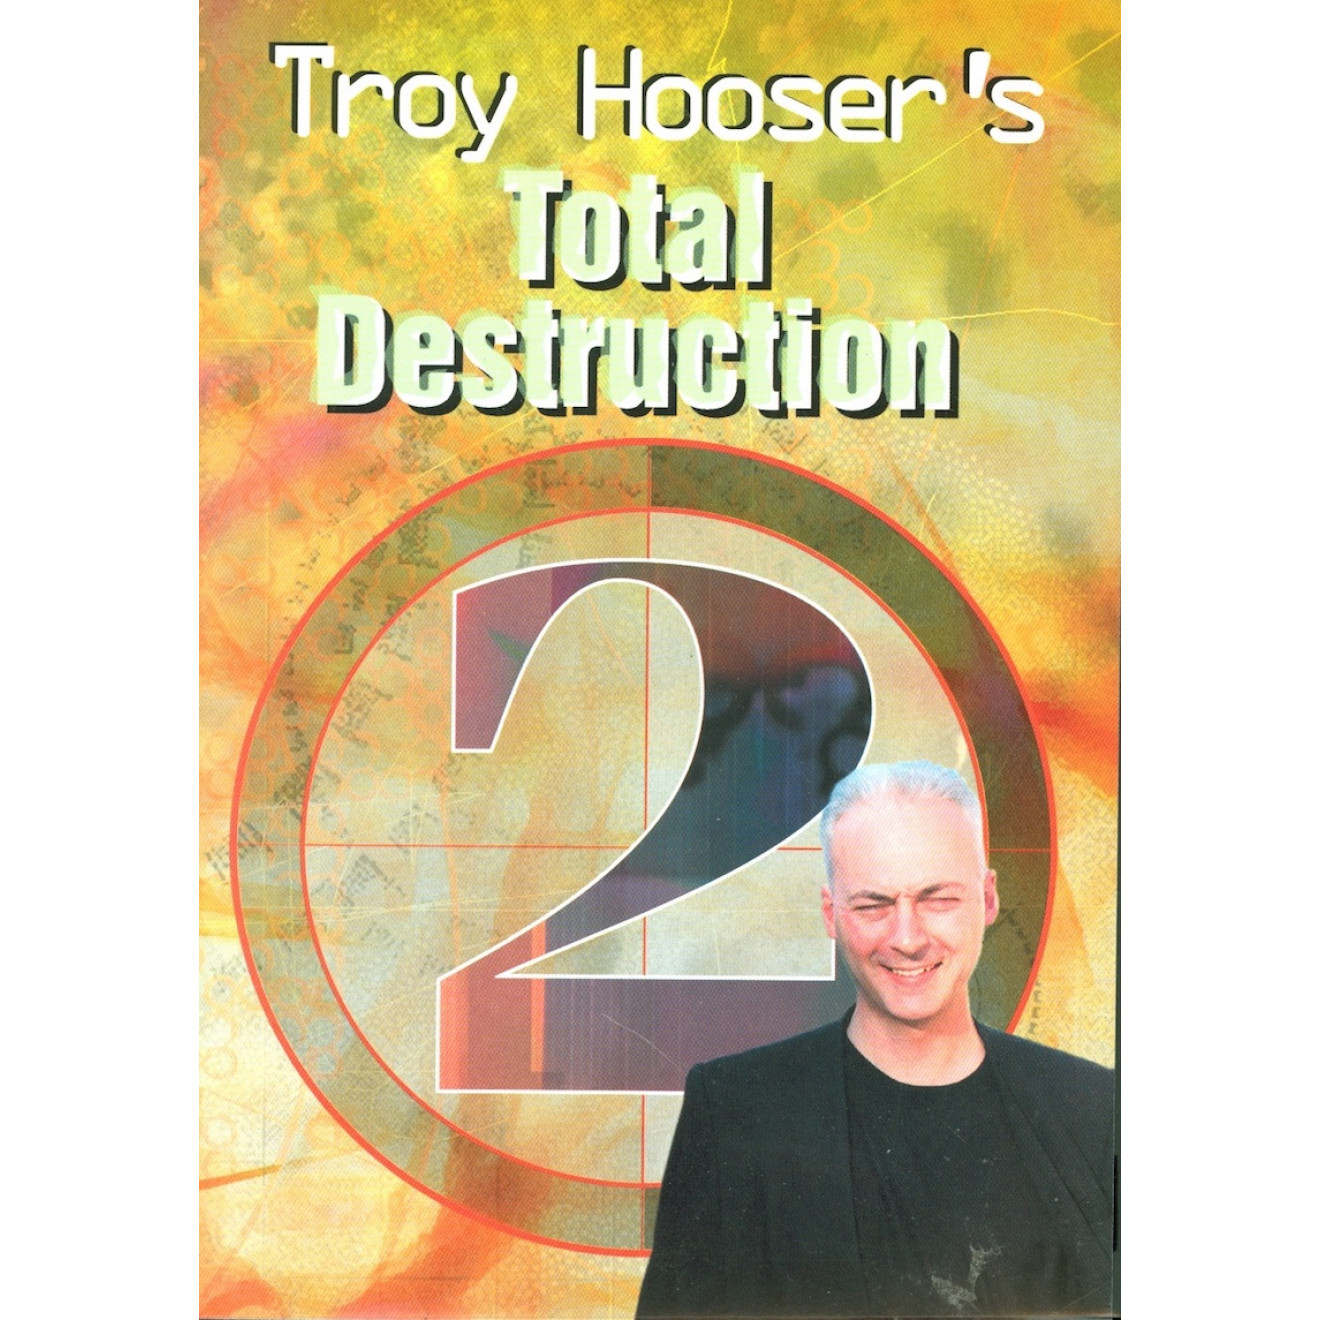 Troy Hooser Total Destruction #2, DVD